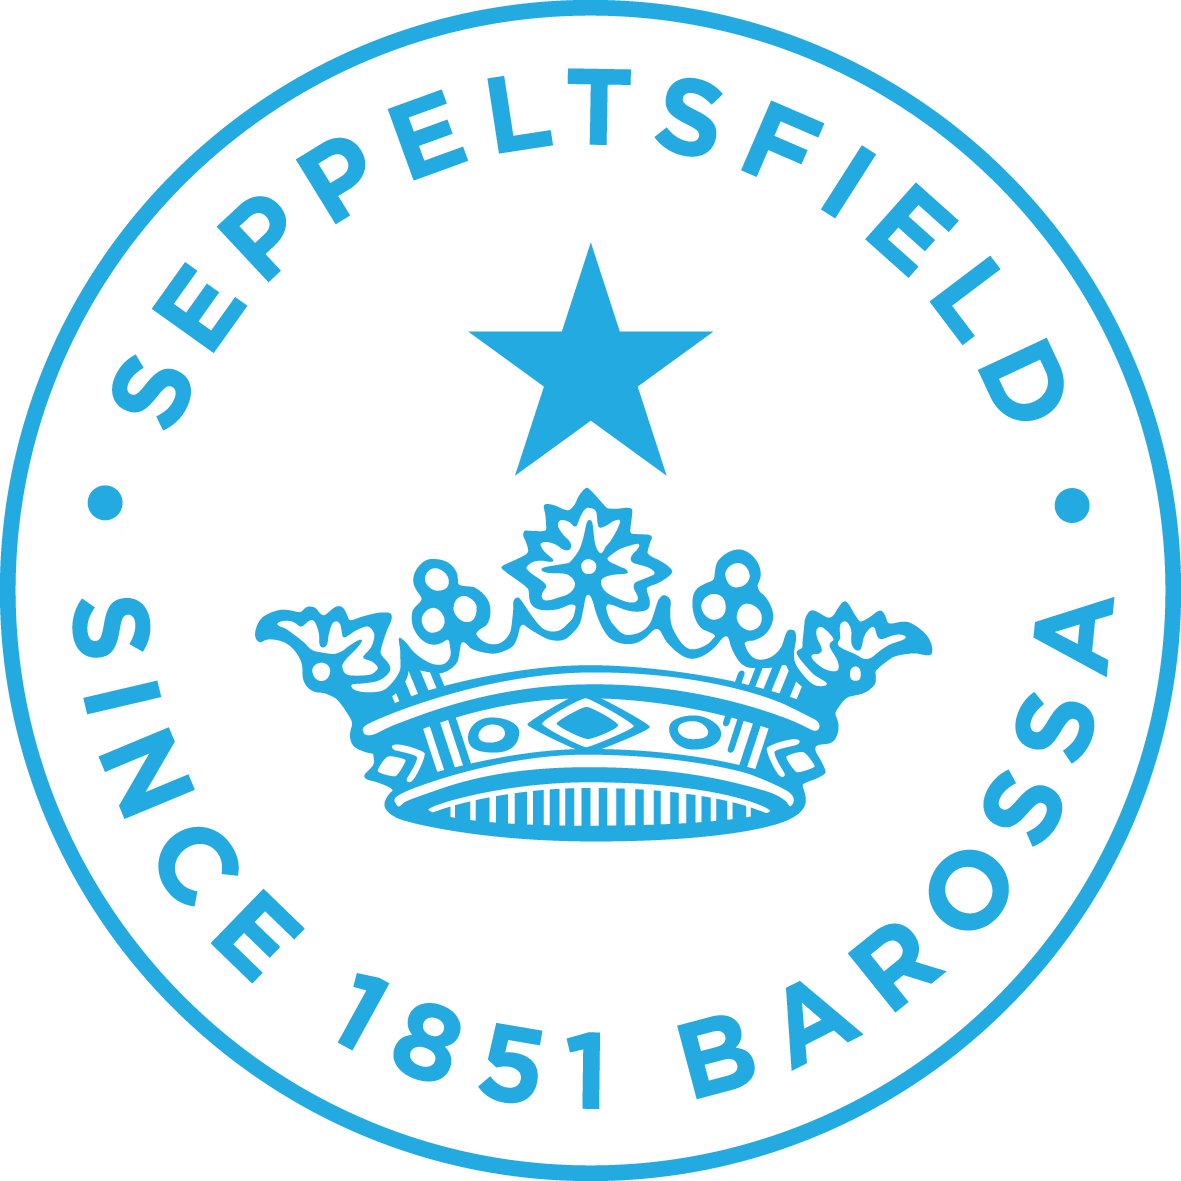 Seppeltsfield capsule logo